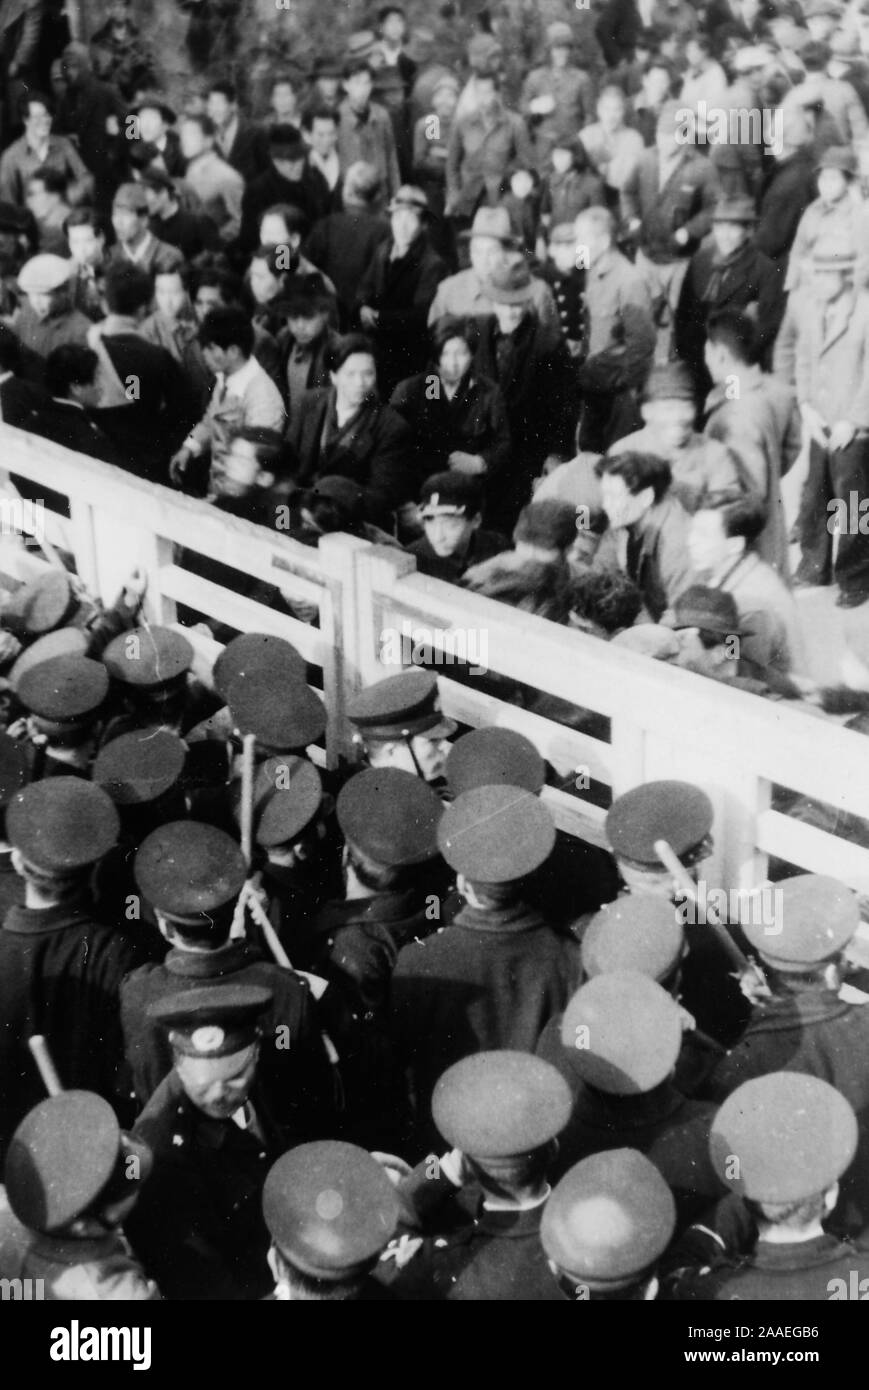 D'un grand angle de vue d'une fermeture de porte, avec des policiers en uniforme d'un côté, et une foule de manifestants civils de l'autre côté, probablement photographié au cours d'une protestation du travail, la Préfecture de Fukuoka, Japon, 1950. () Banque D'Images